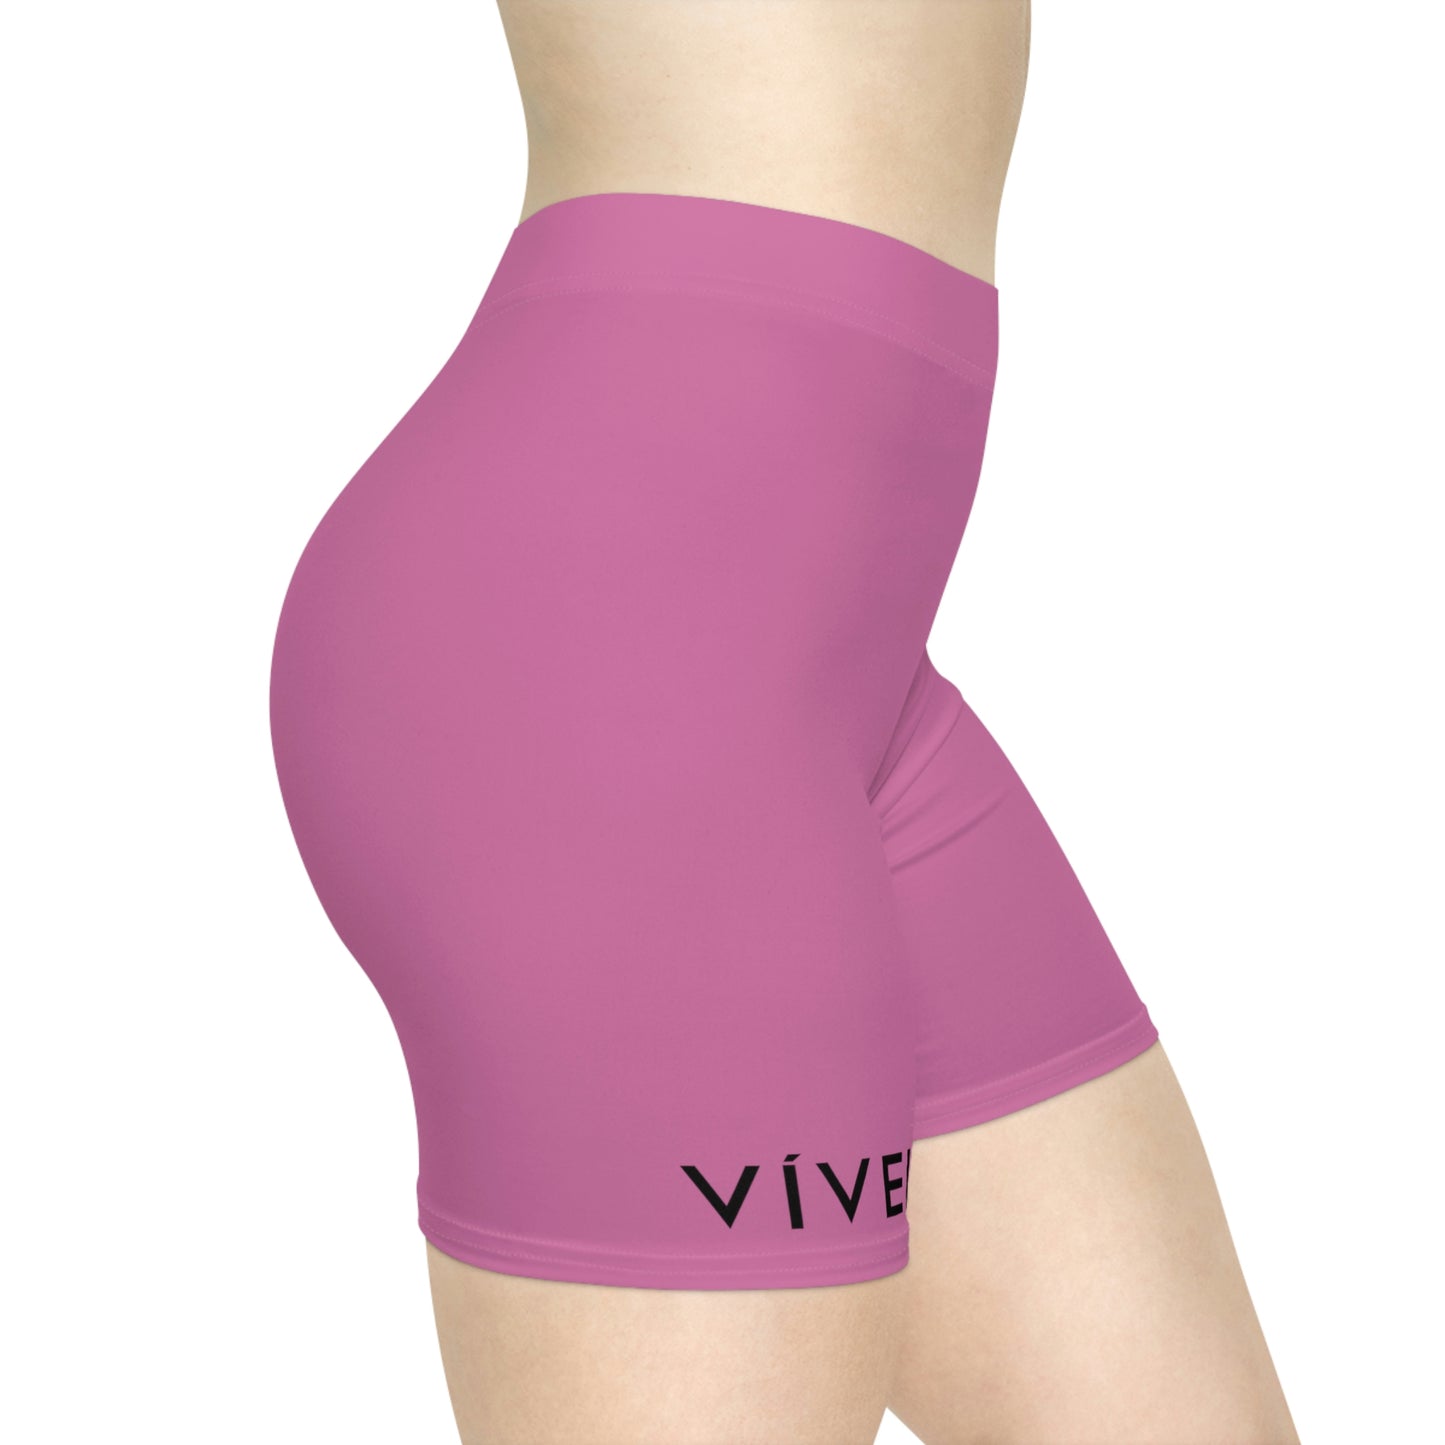 Vivela Women's Biker Shorts unpadded